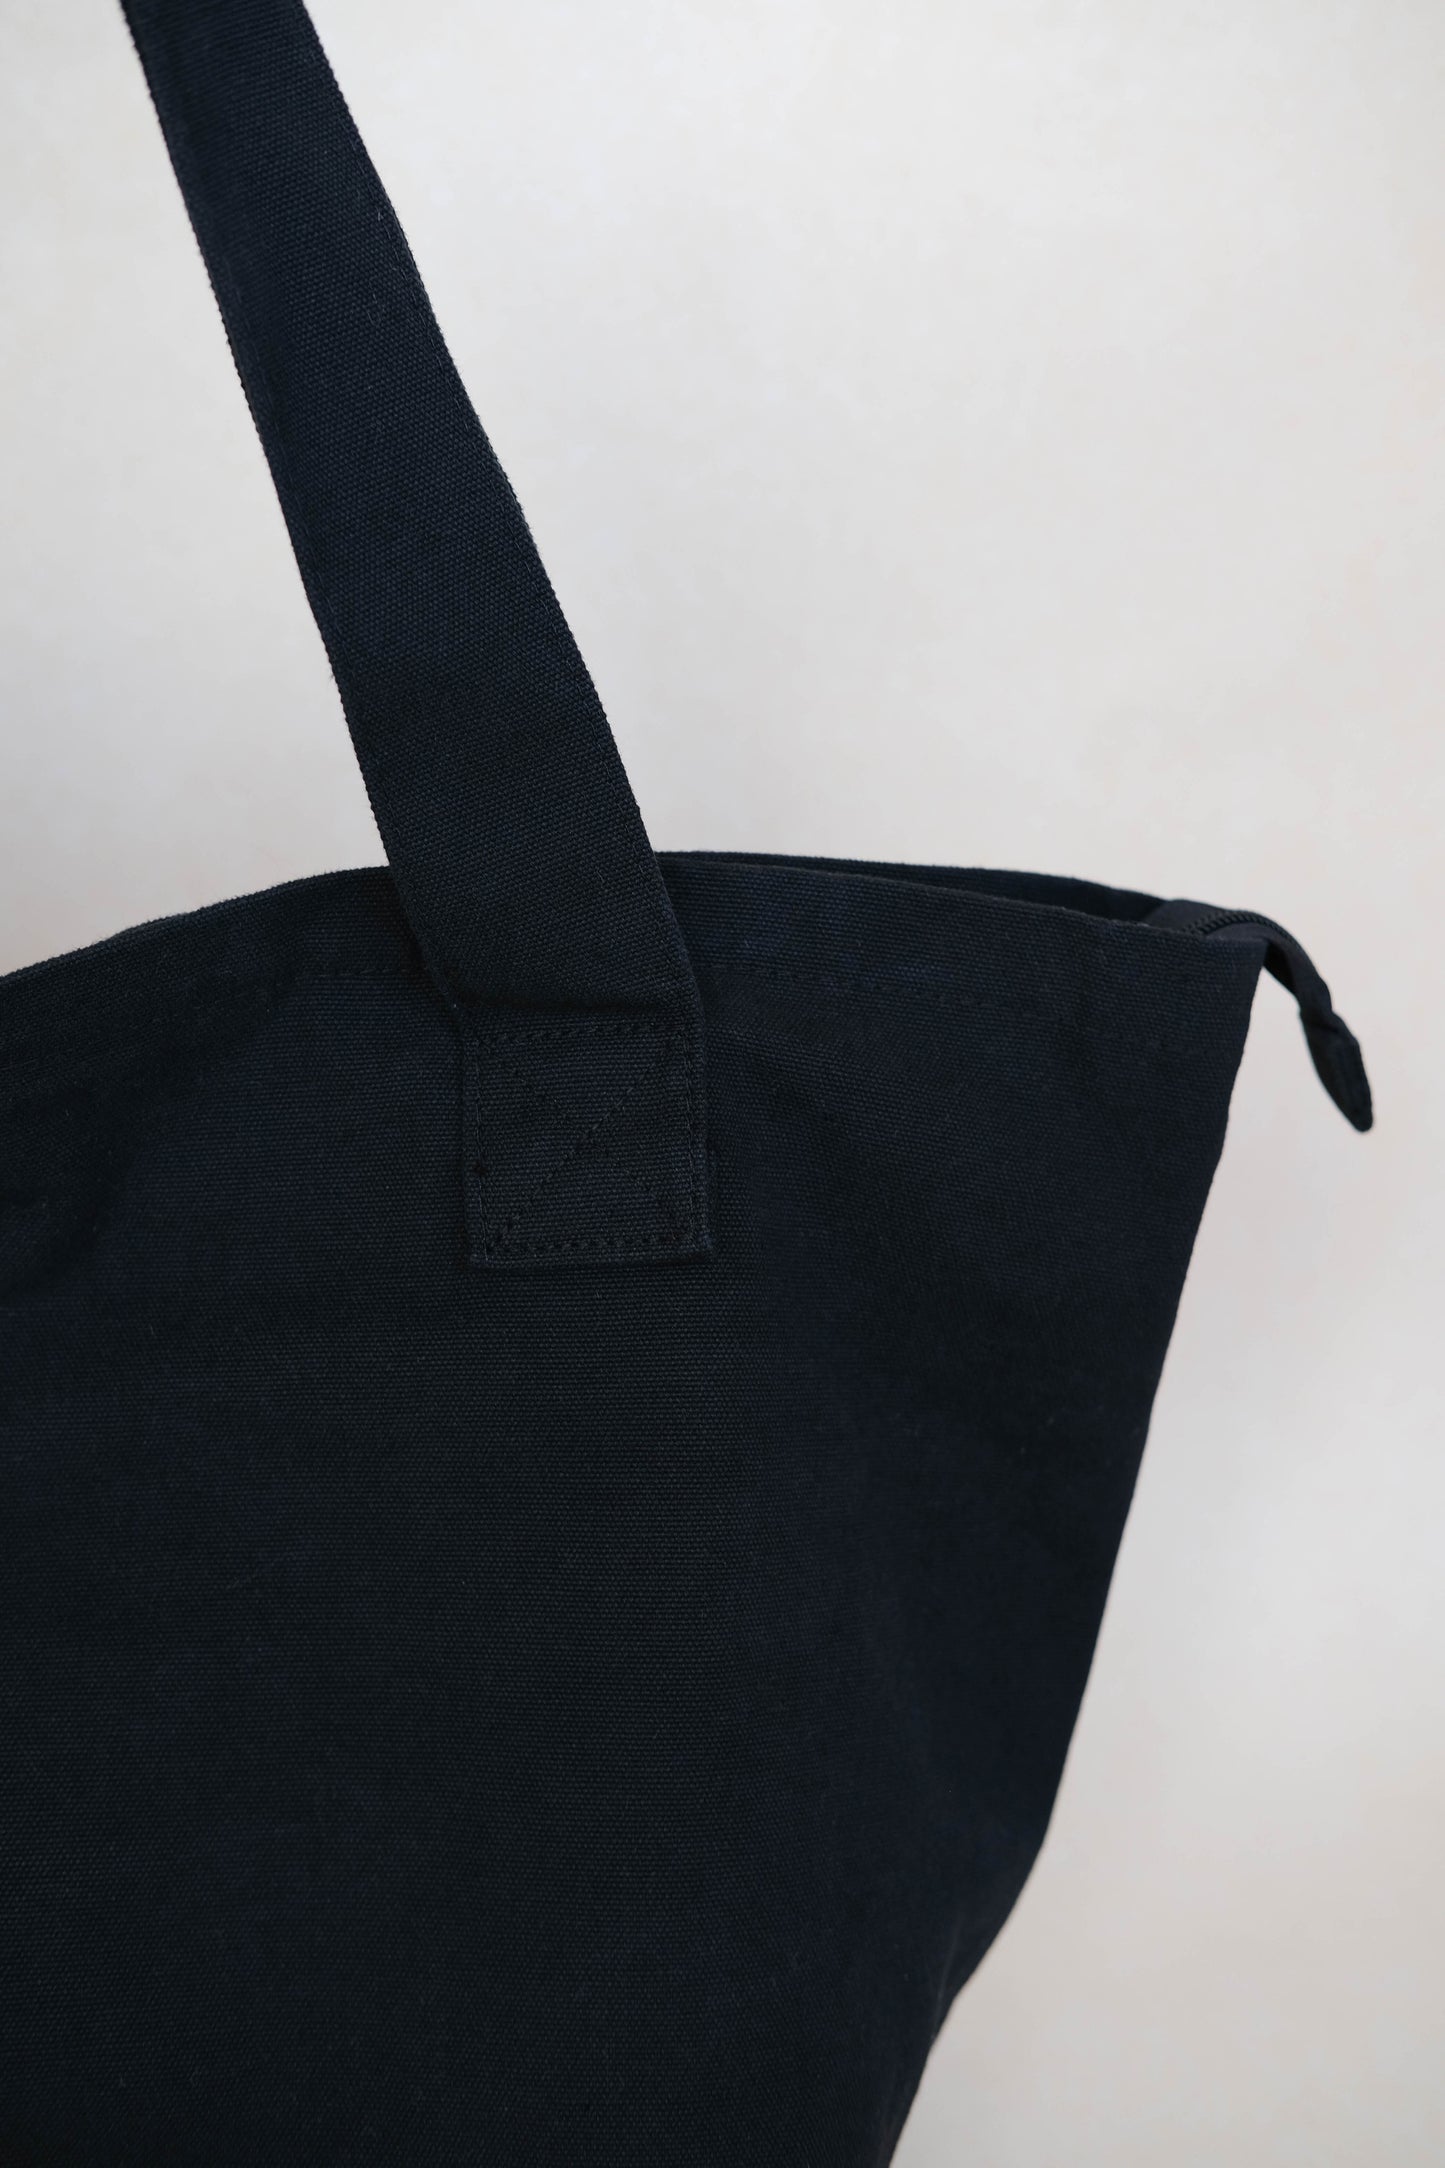 Tote shoulder bag in solid black